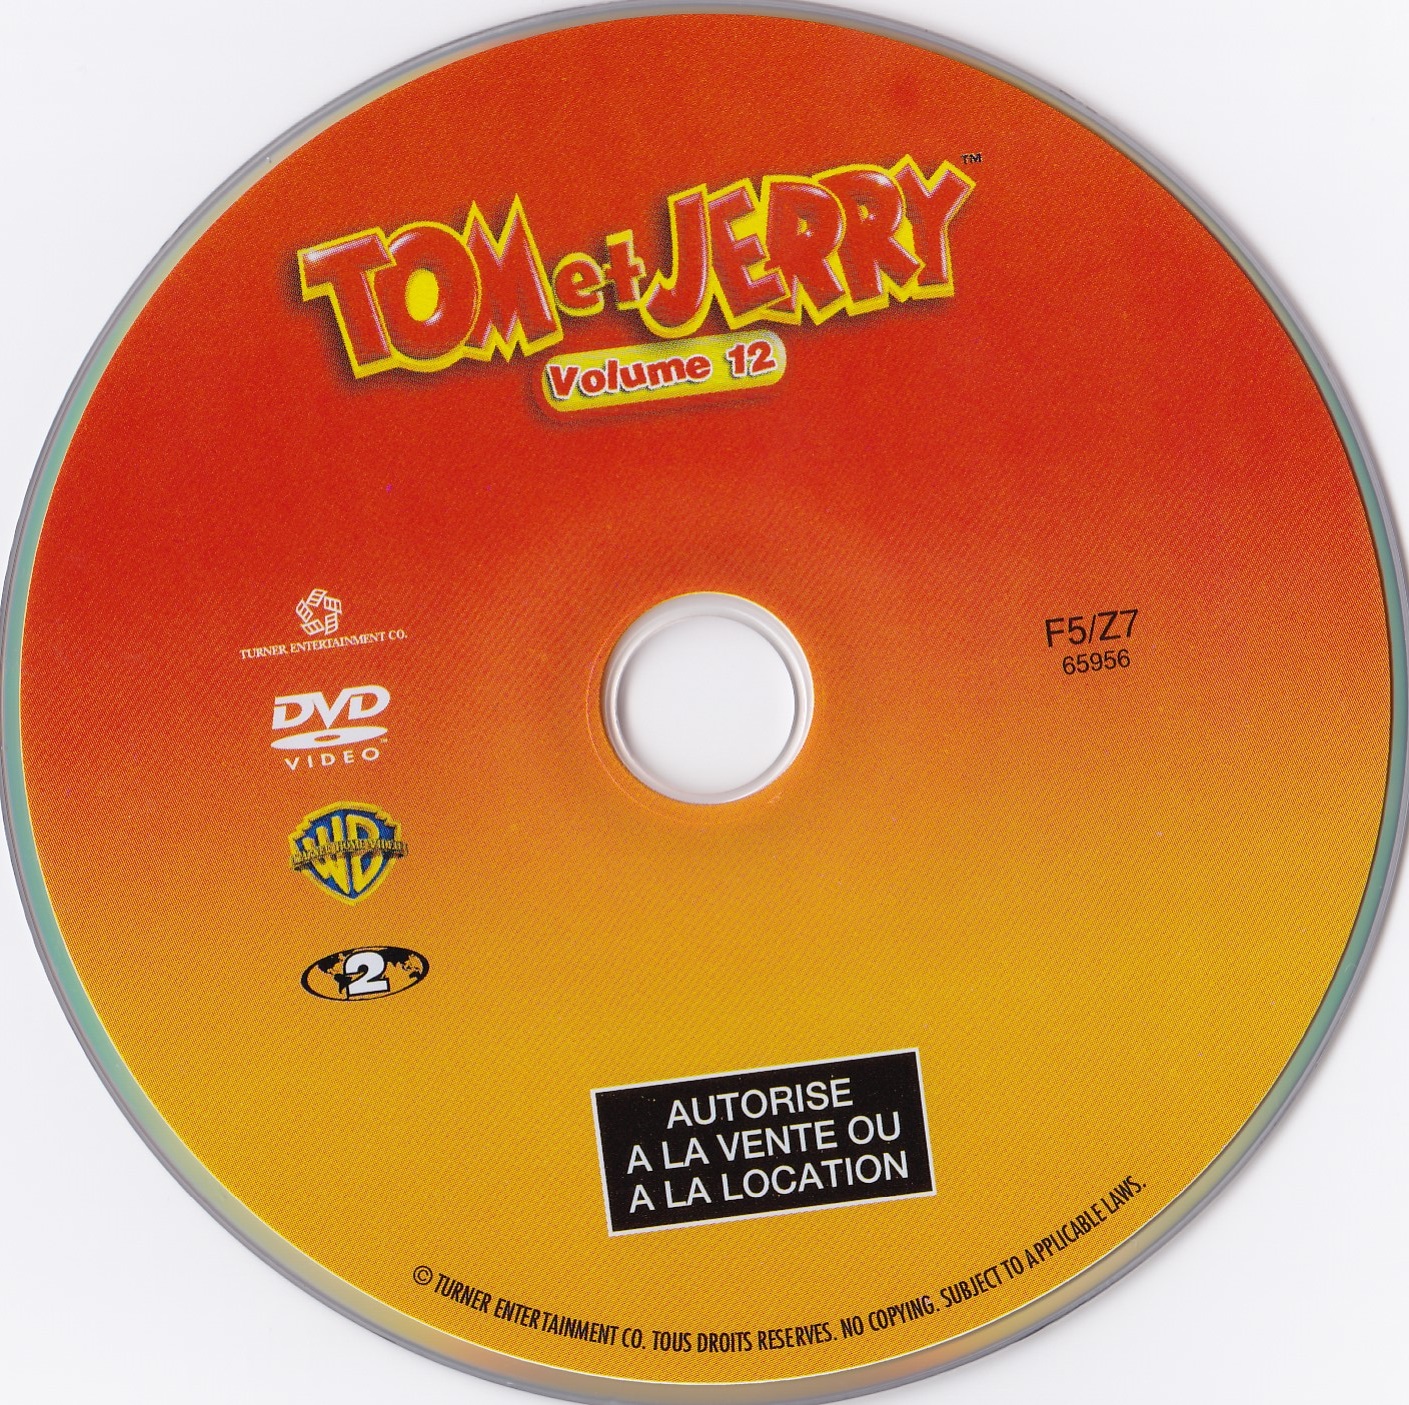 Tom et Jerry Volume 12